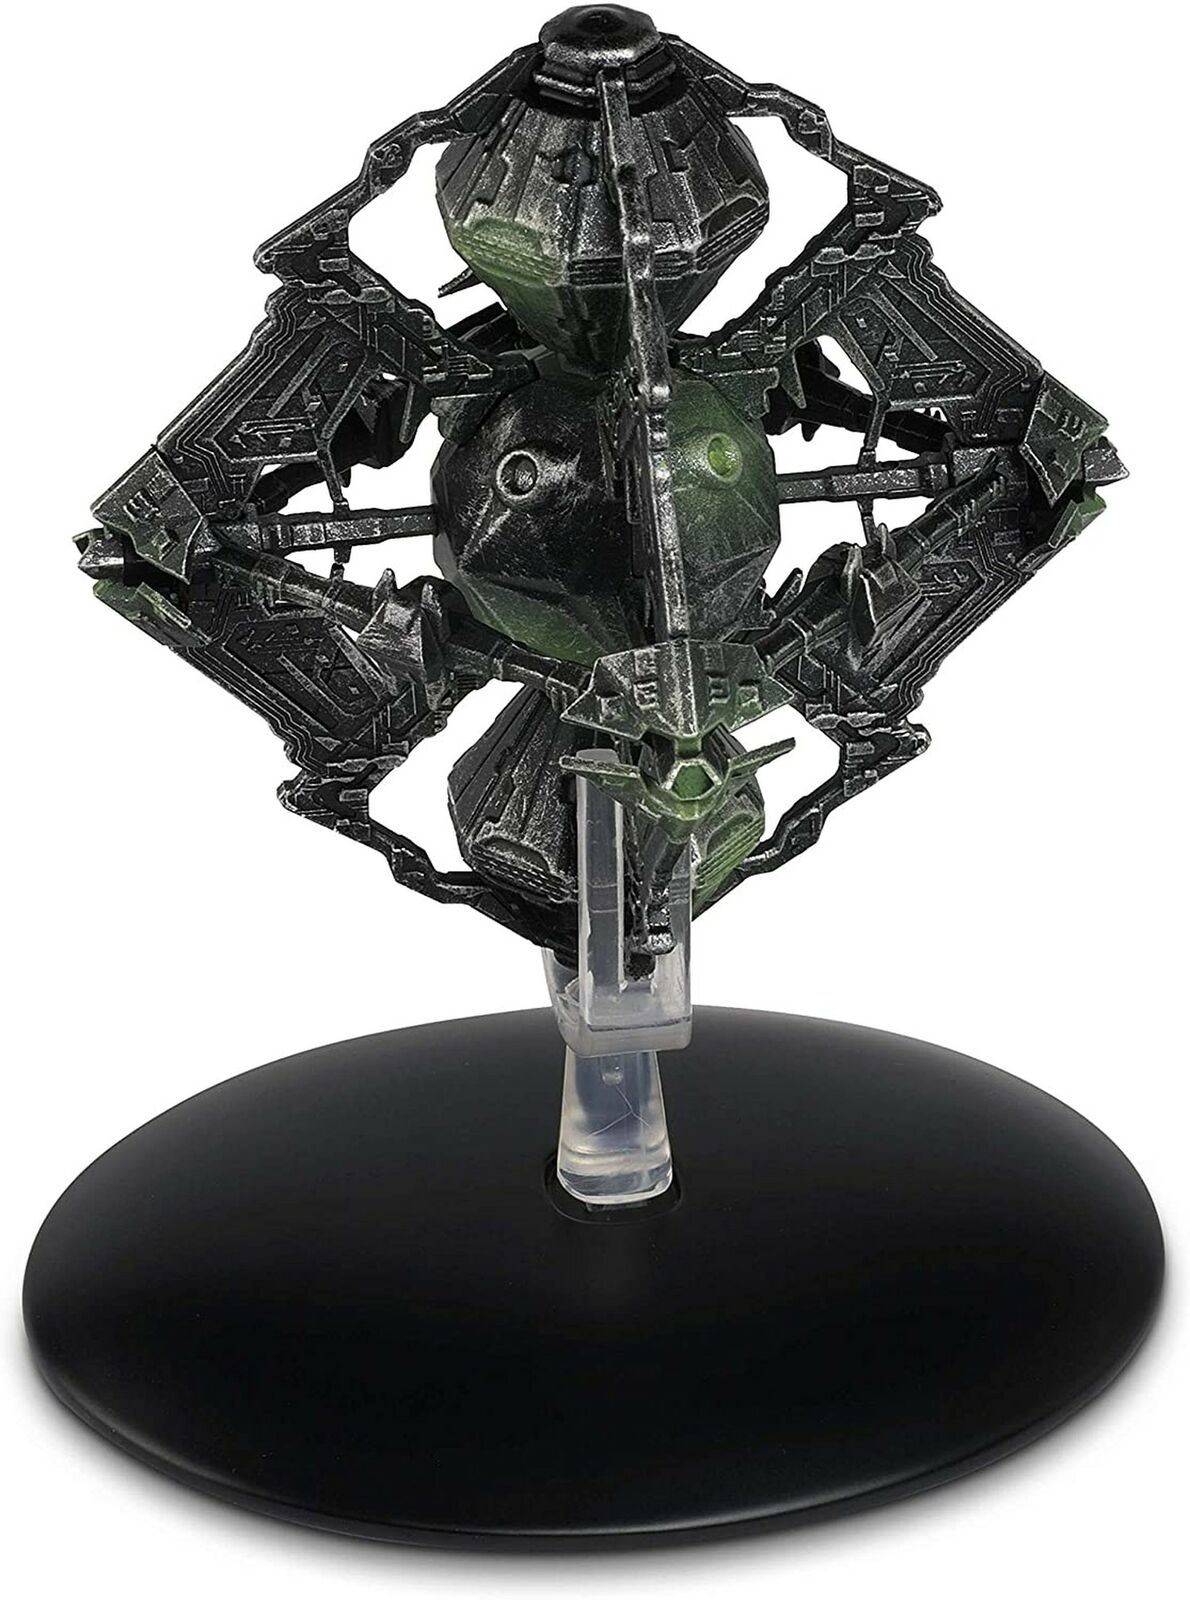 #109 Borg Queen's Vessel Starship Die-Cast Model (Eaglemoss / Star Trek)